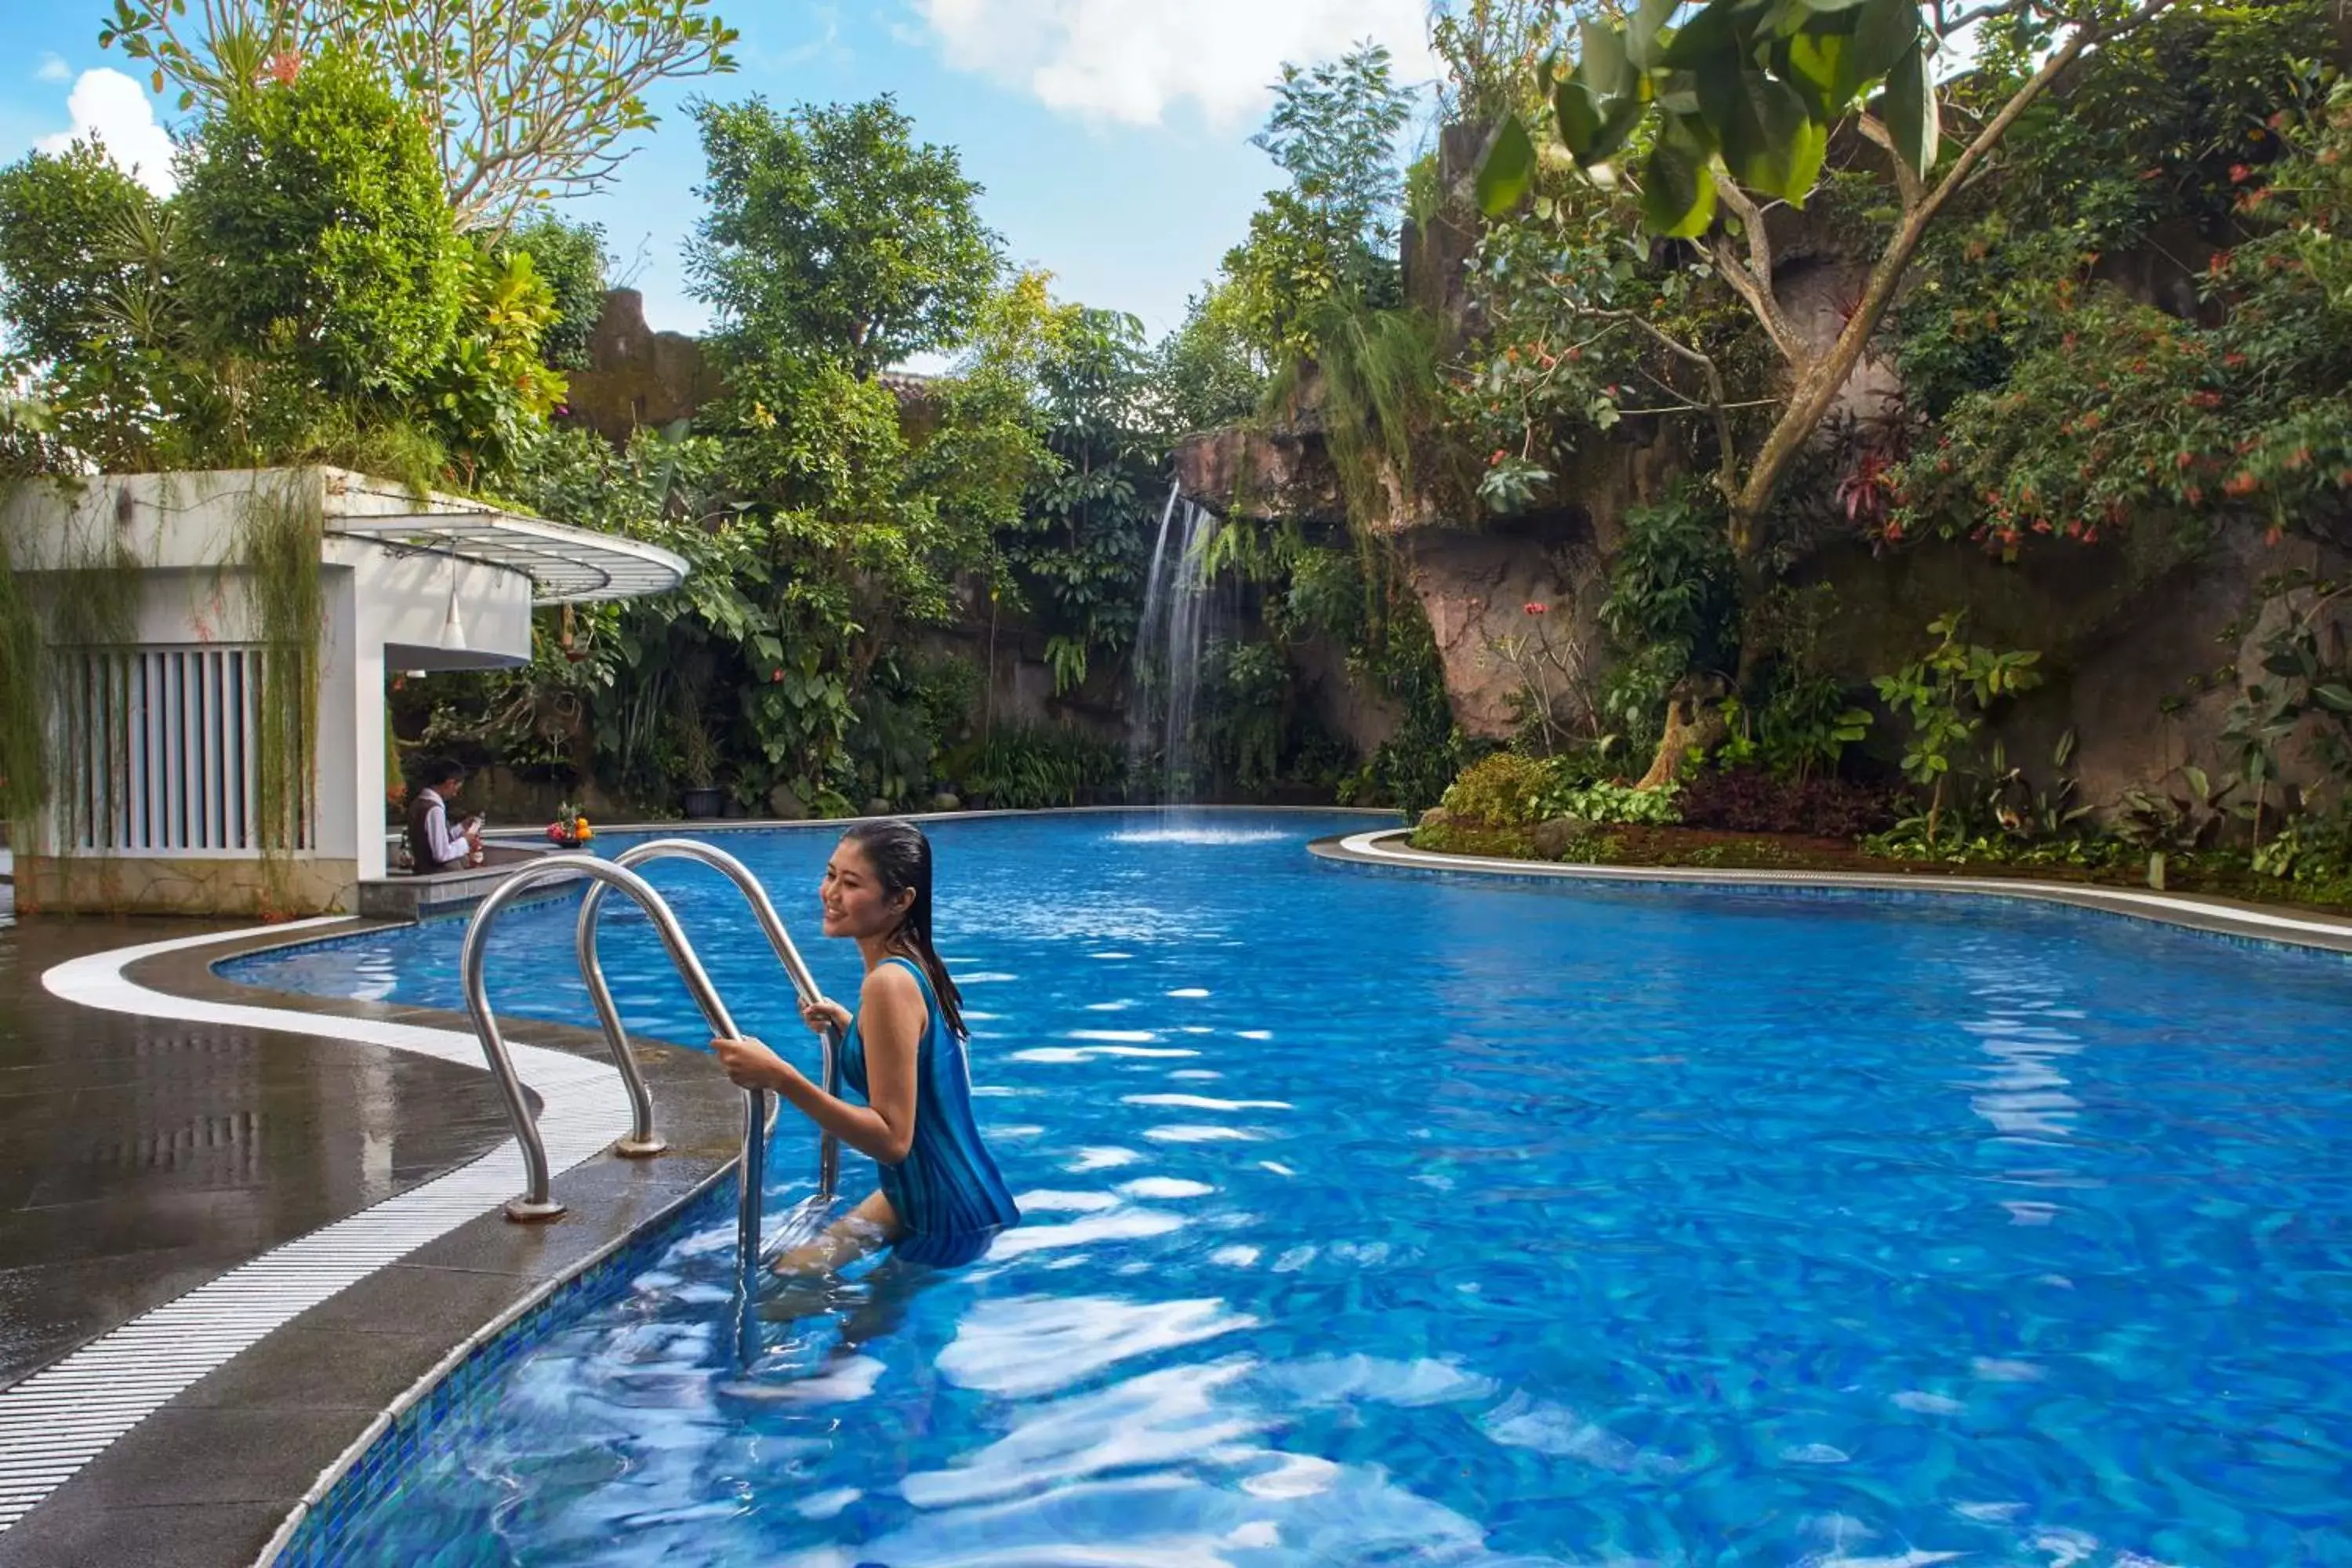 Swimming pool in Jambuluwuk Malioboro Hotel Yogyakarta